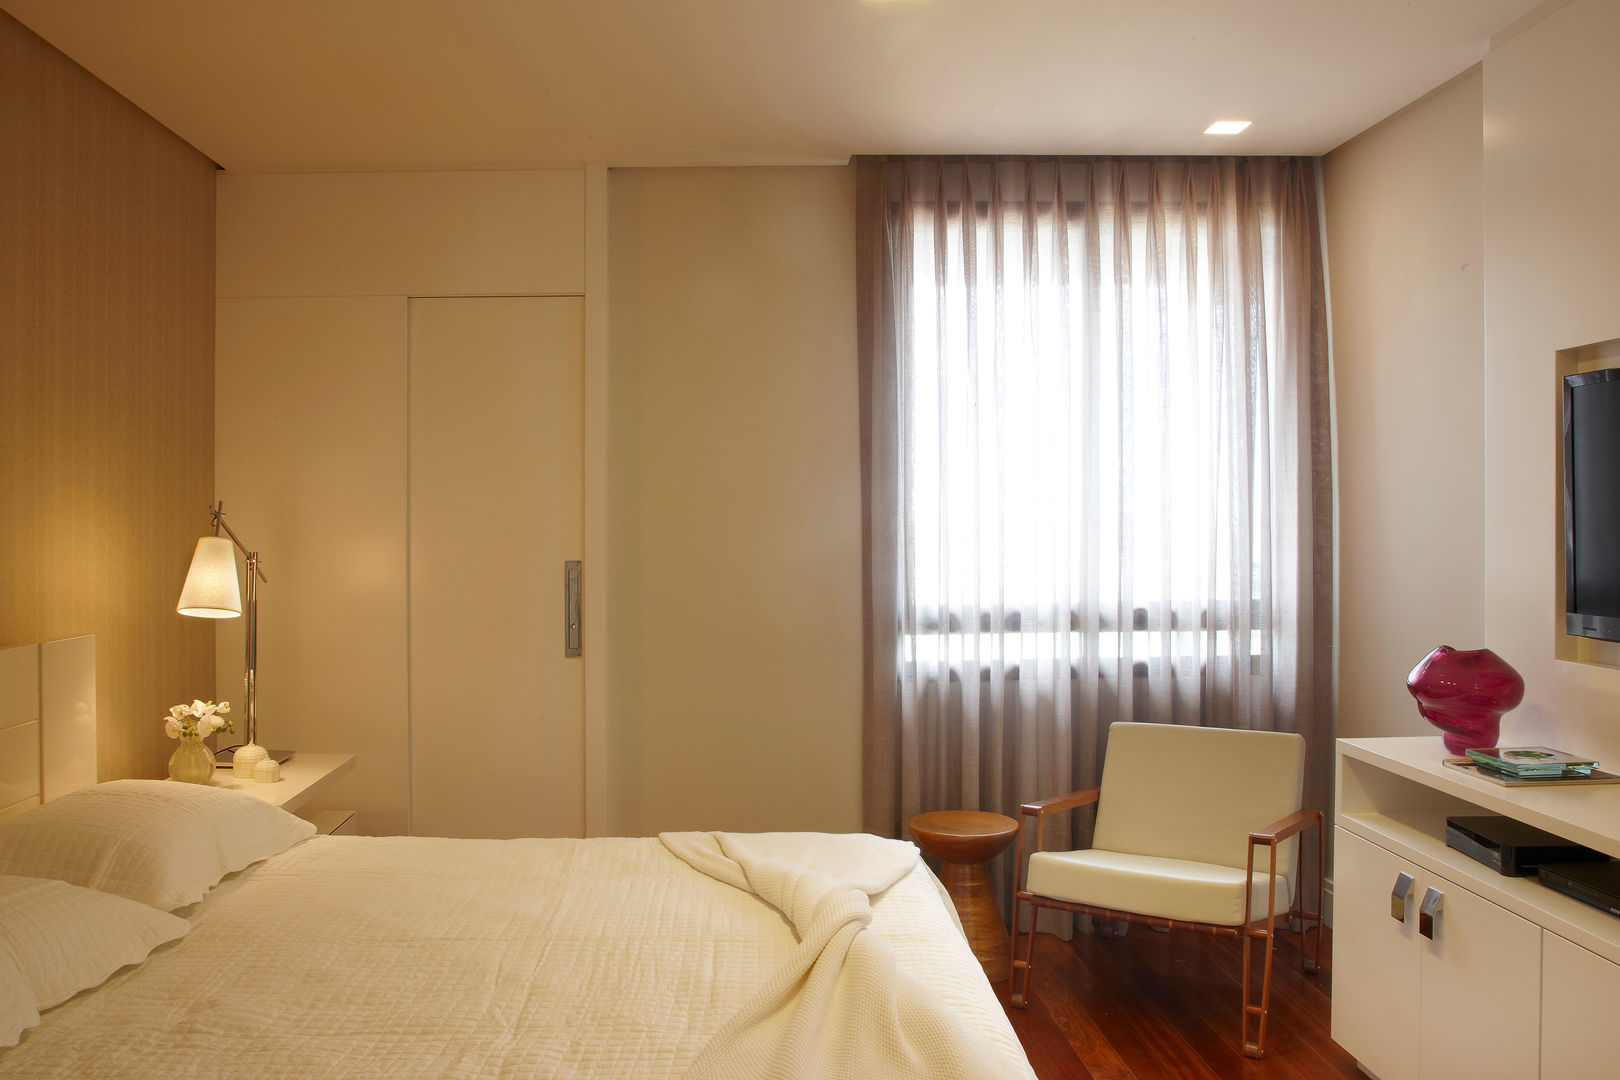 Apartamento Prainha, Coutinho+Vilela Coutinho+Vilela Dormitorios modernos: Ideas, imágenes y decoración